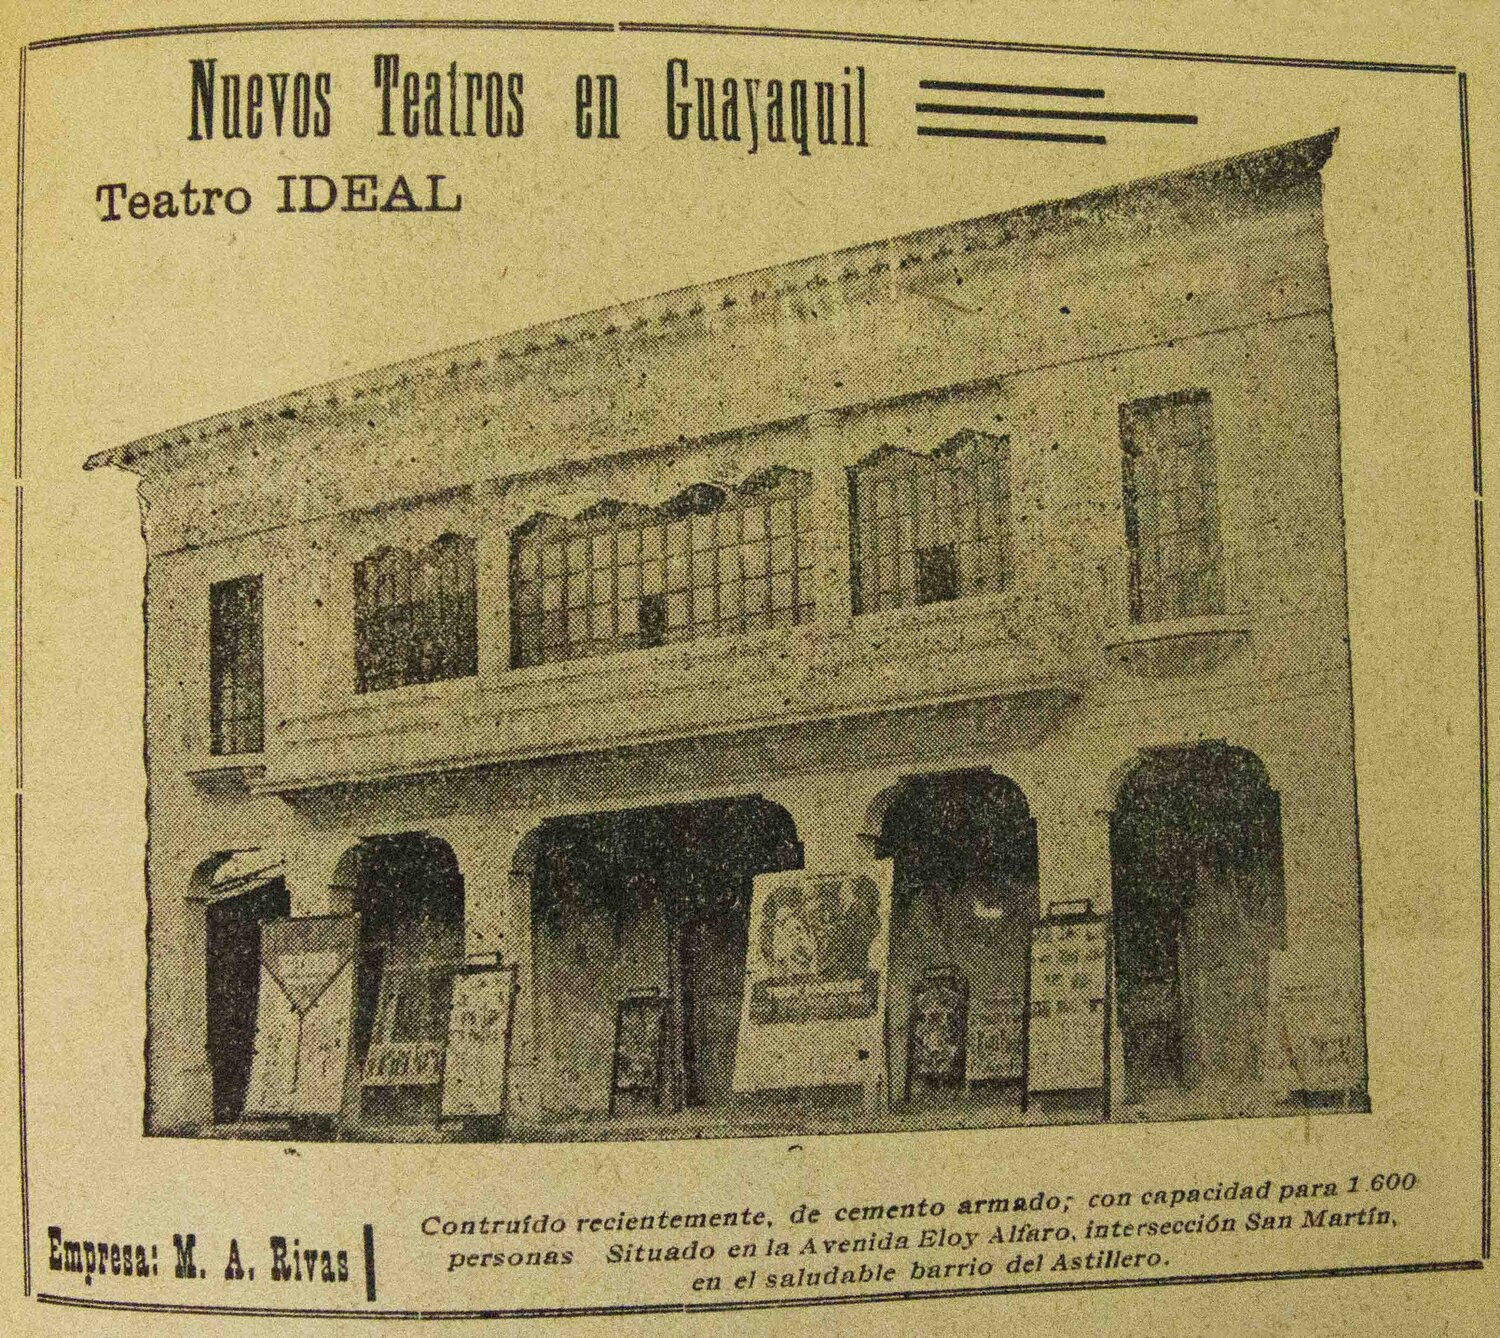 Estreno del Teatro Ideal. Proyecciones del Edén No.14. 1922, Guayaquil.